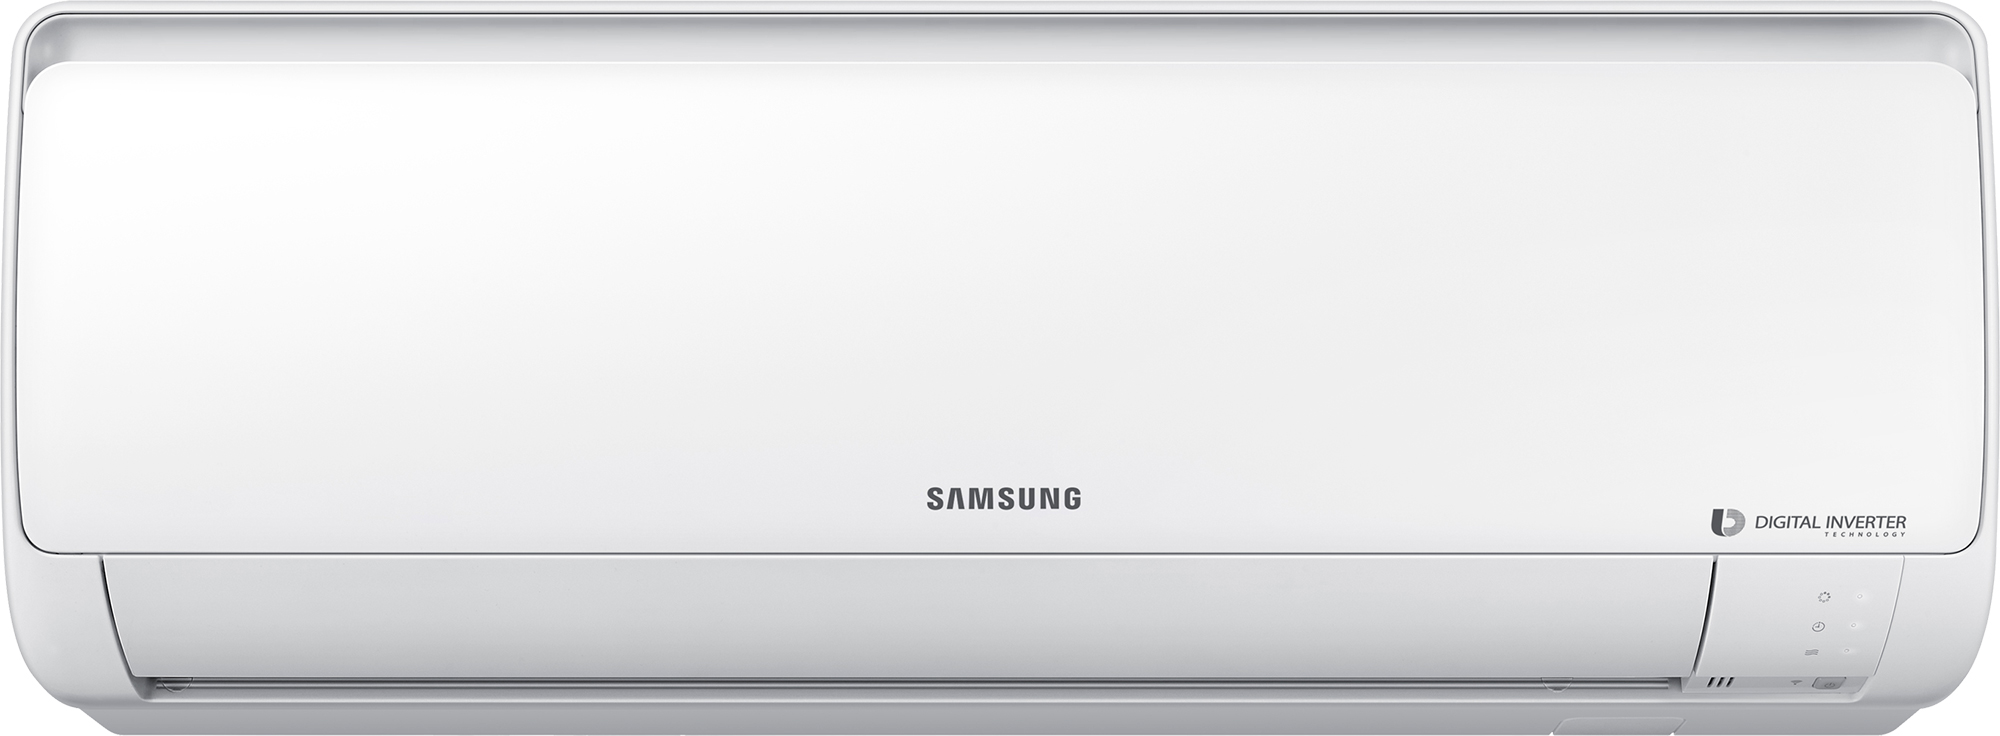 Тепловой насос Samsung воздух-воздух Samsung AR09RSFPAWQNER / AR09RSFPAWQXER